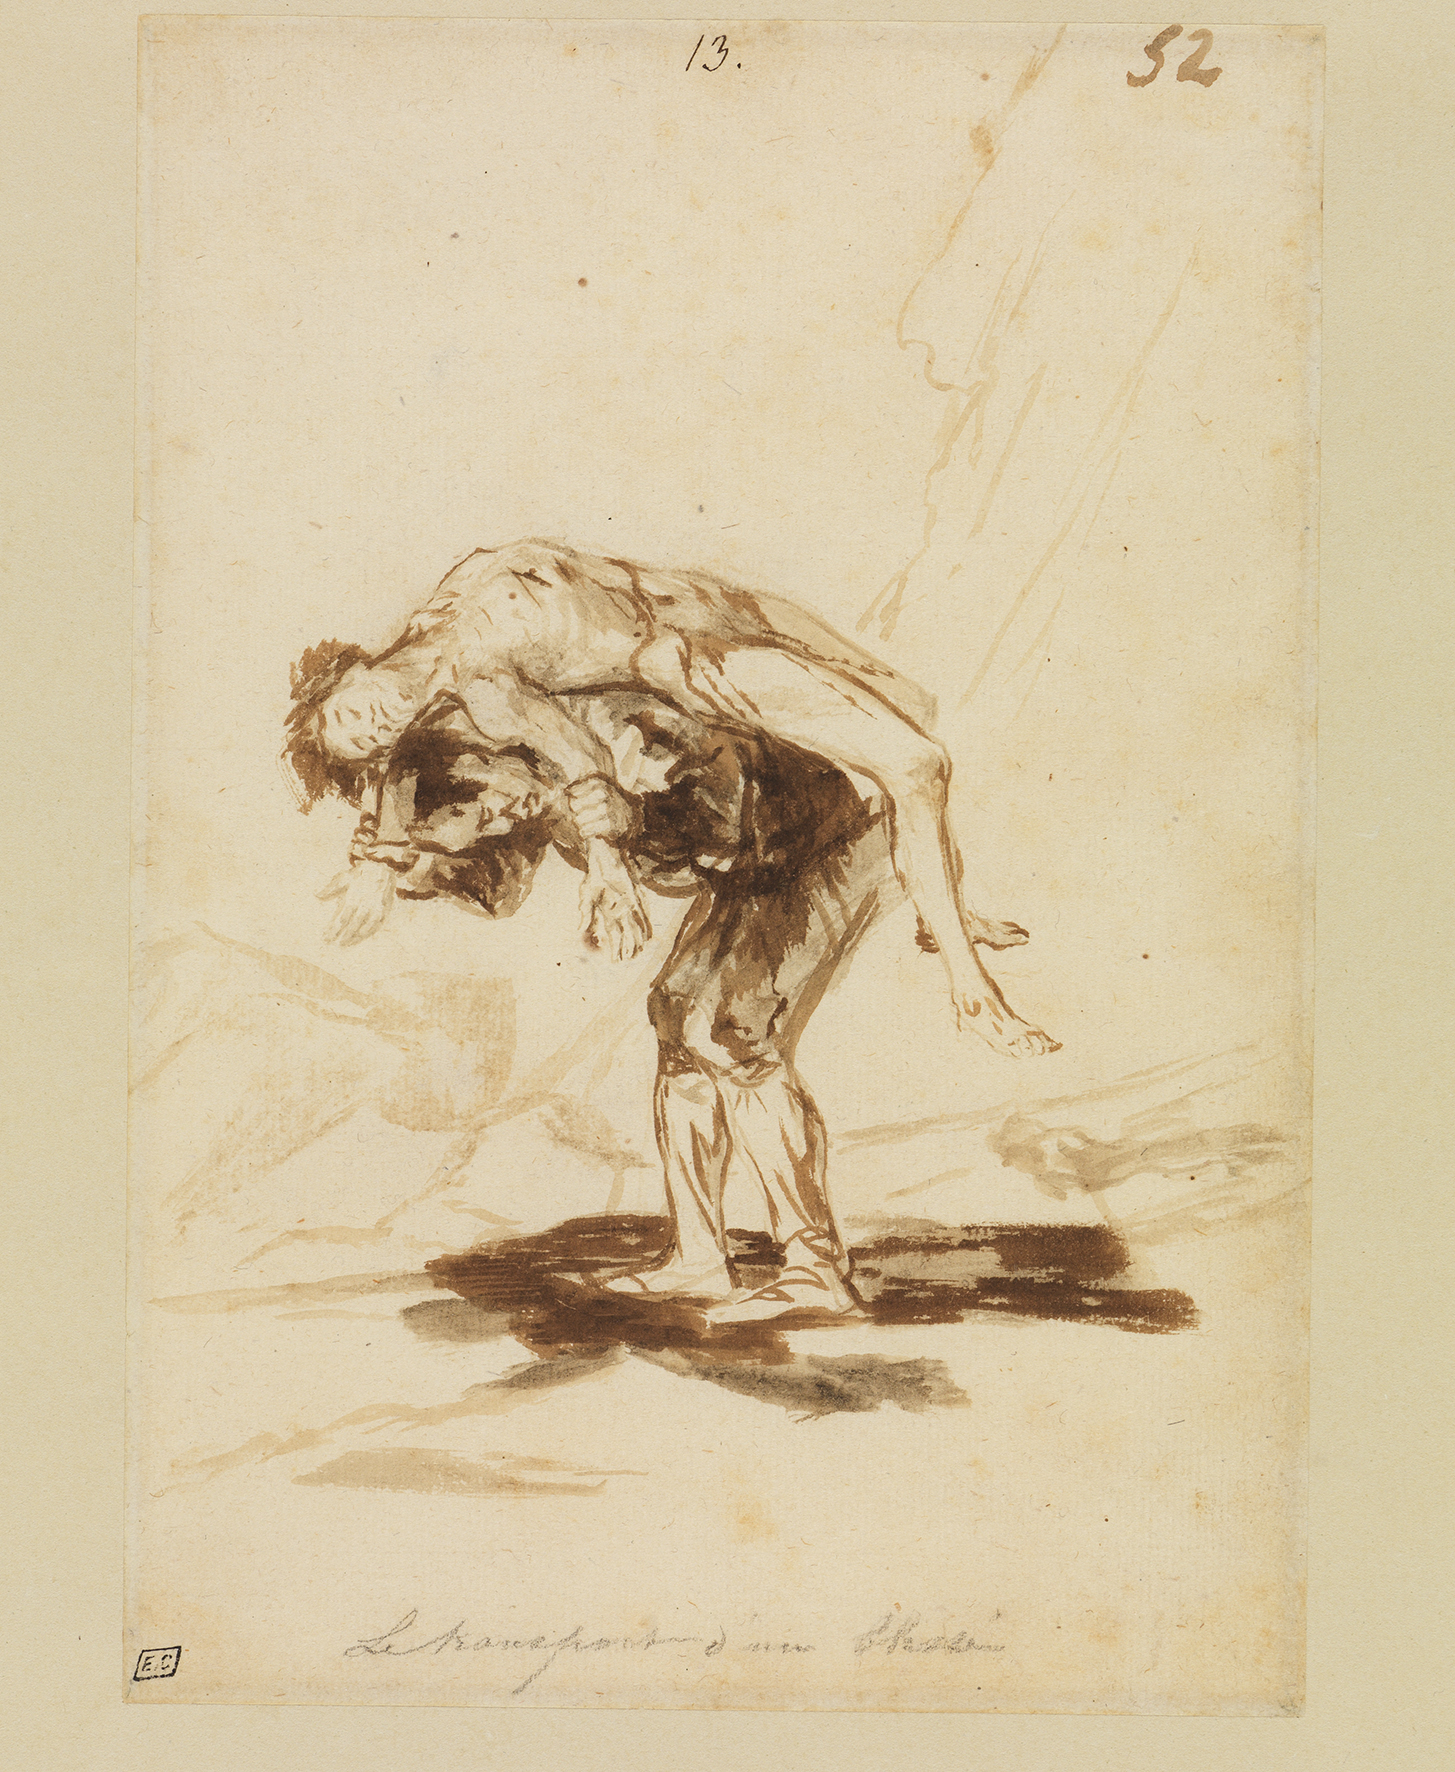 Zeichnung Ein Mann trägt einen Toten von Francisco de Goya, entstanden zwischen 1815 und 1820.